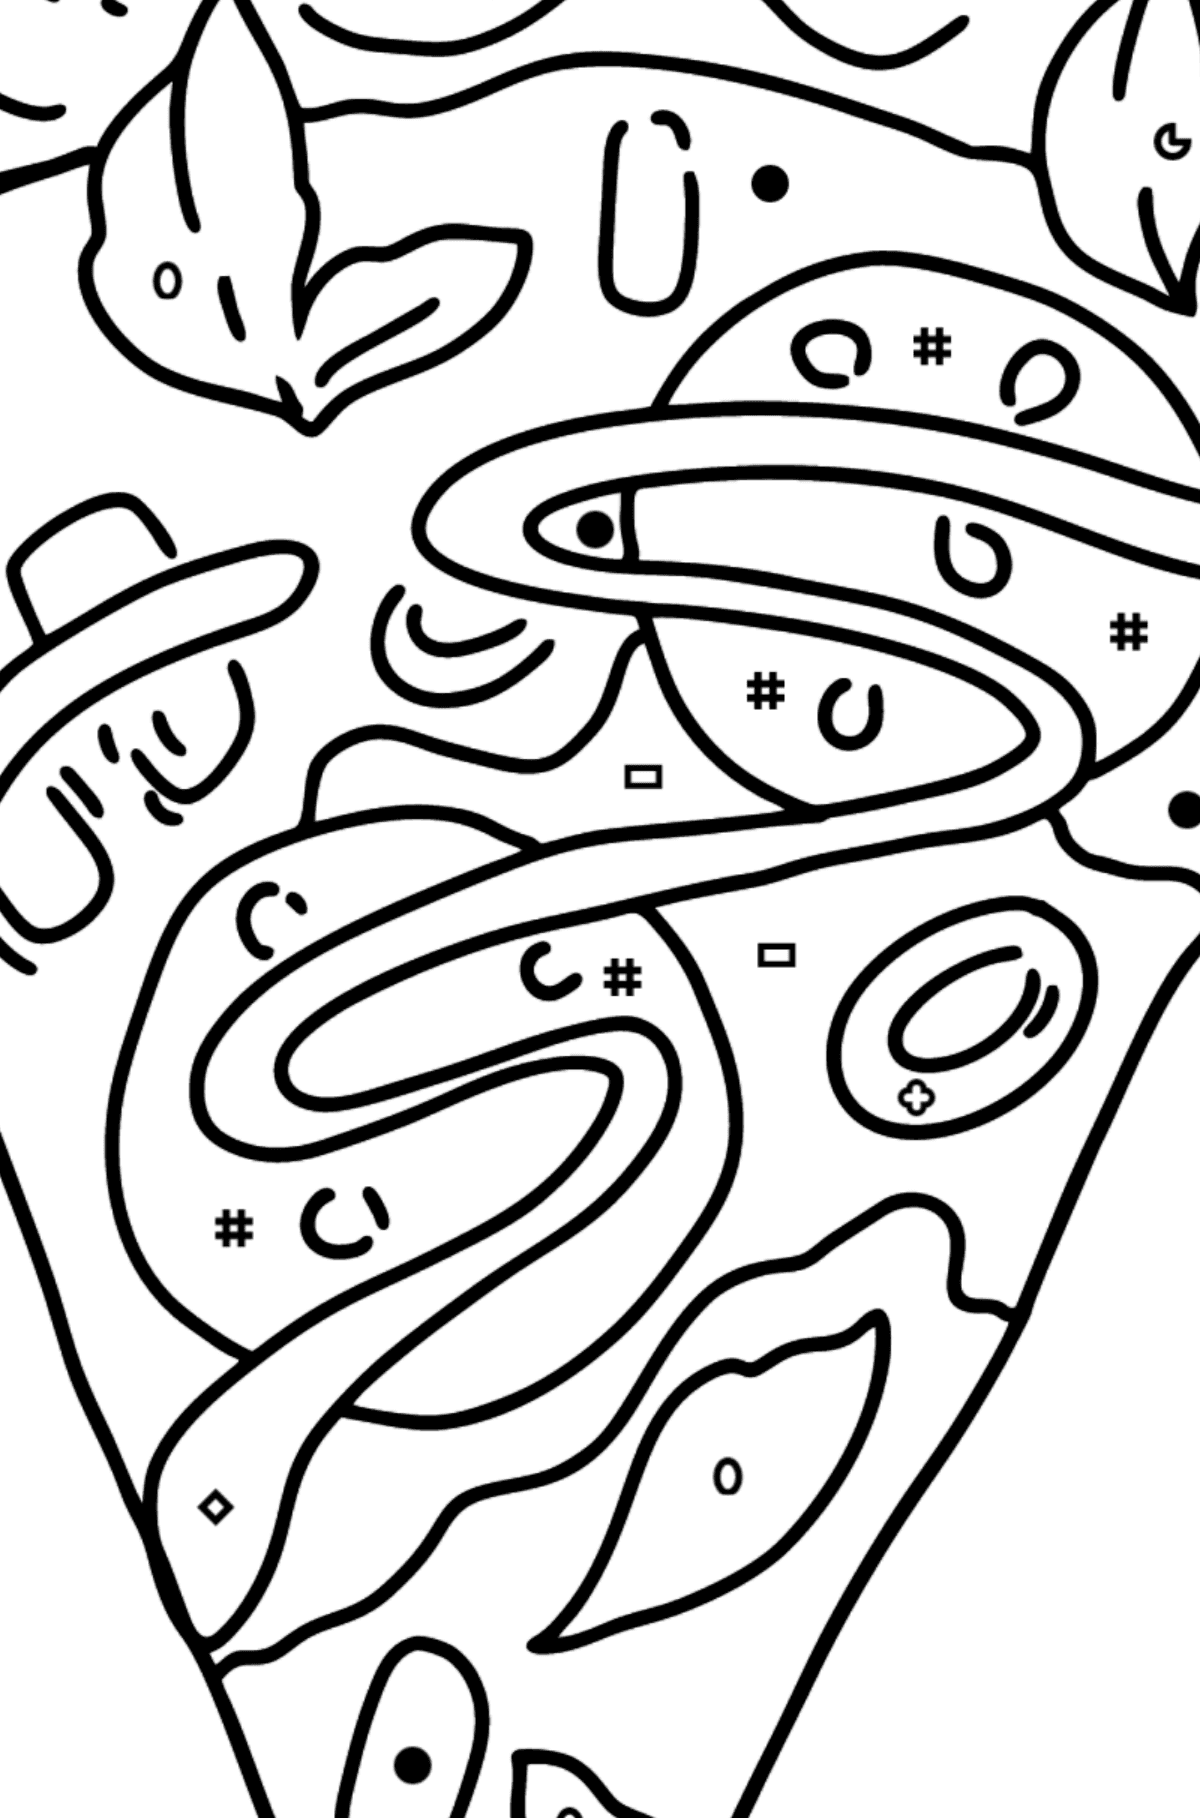 Розмальовка Піца з салямі - Розмальовка по Символам і Геометричним Фігурам для дітей